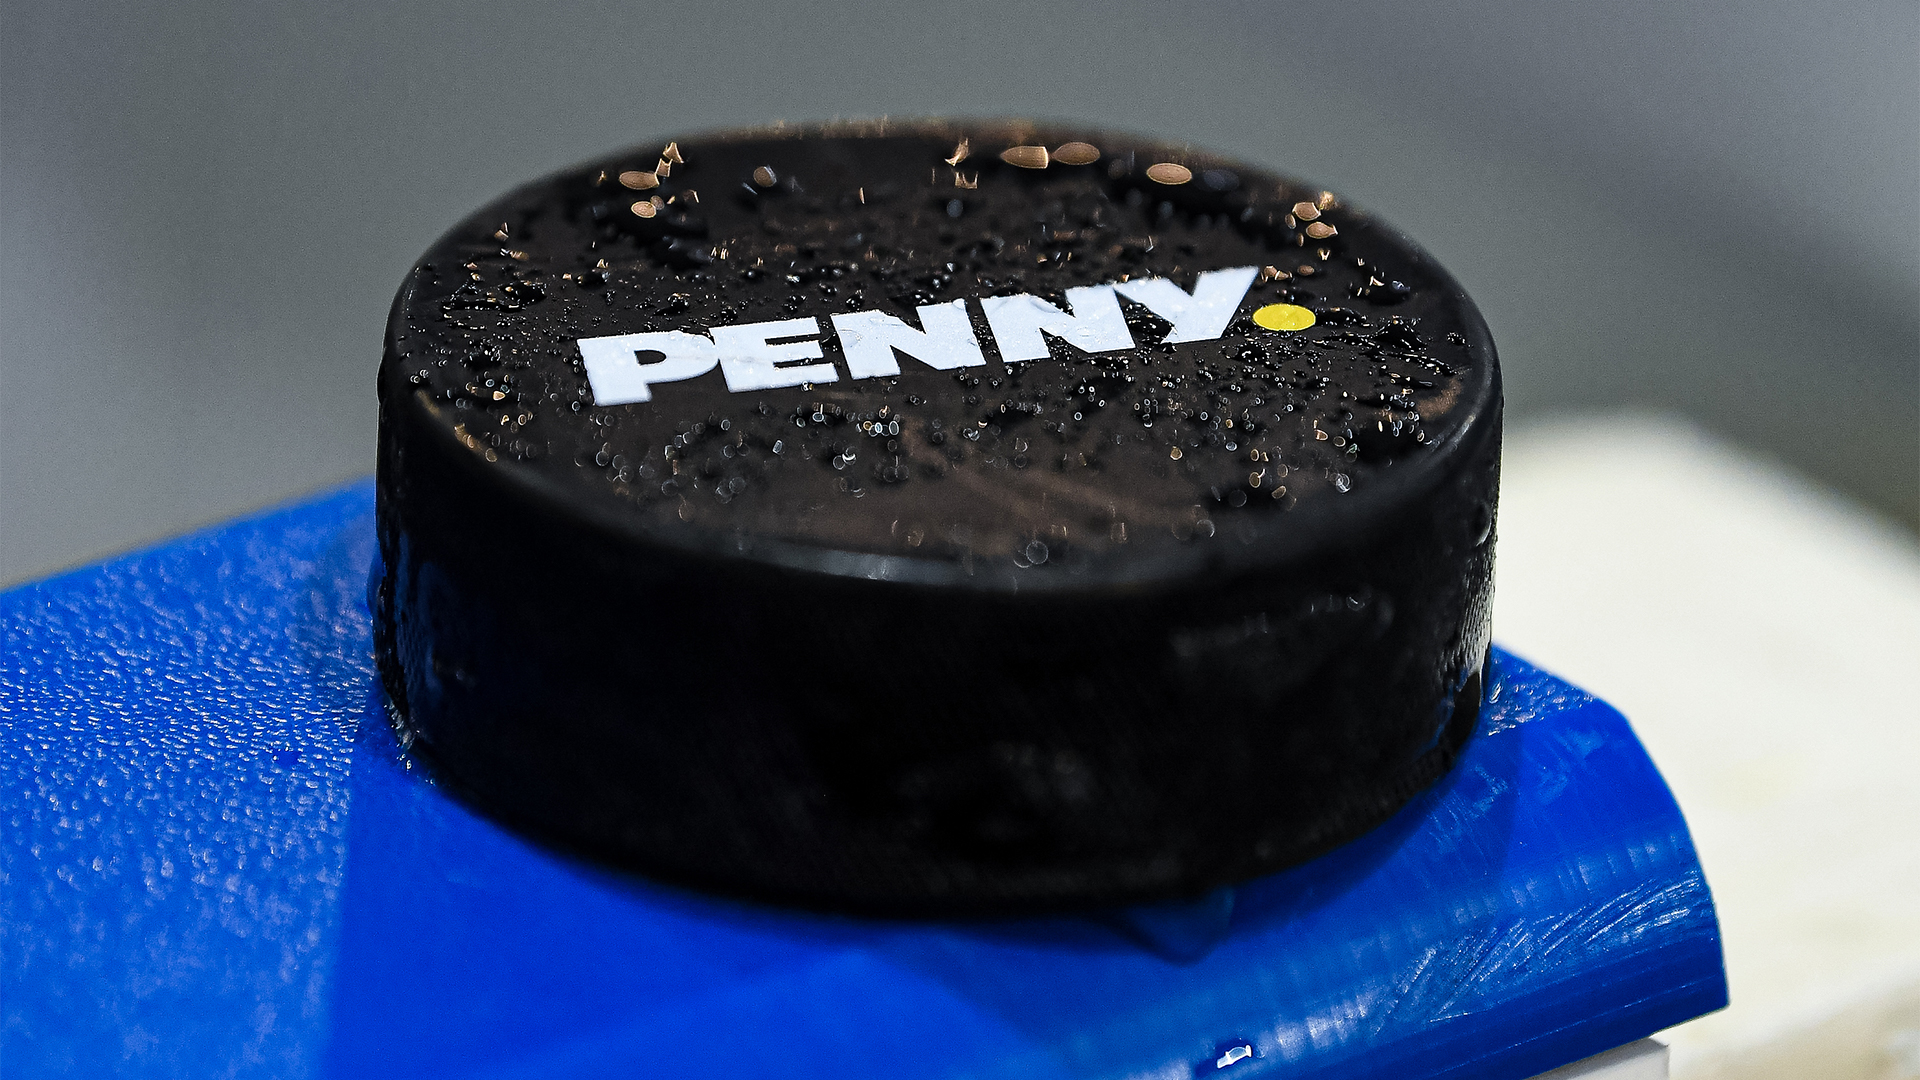 PENNY DEL implementiert ligaweit die Echtzeit-Analyseplattform Wisehockey